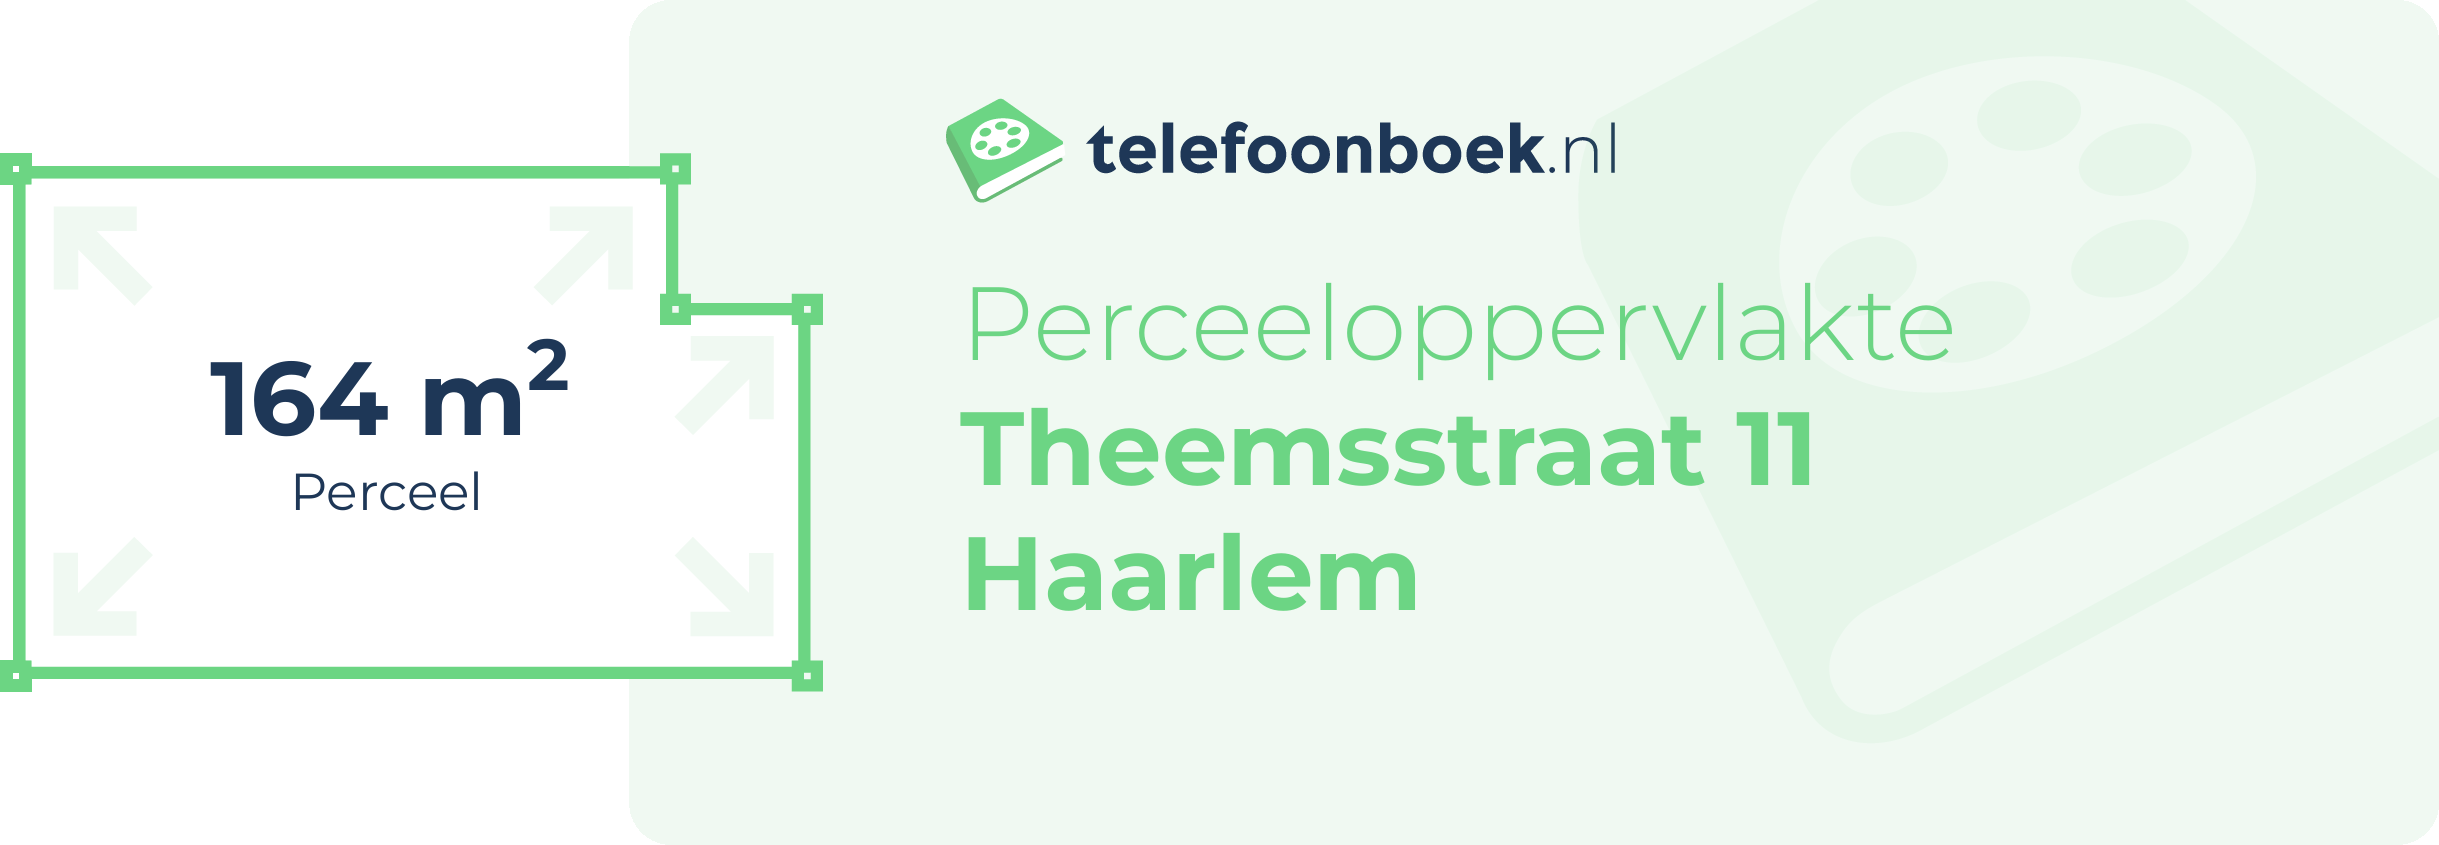 Perceeloppervlakte Theemsstraat 11 Haarlem